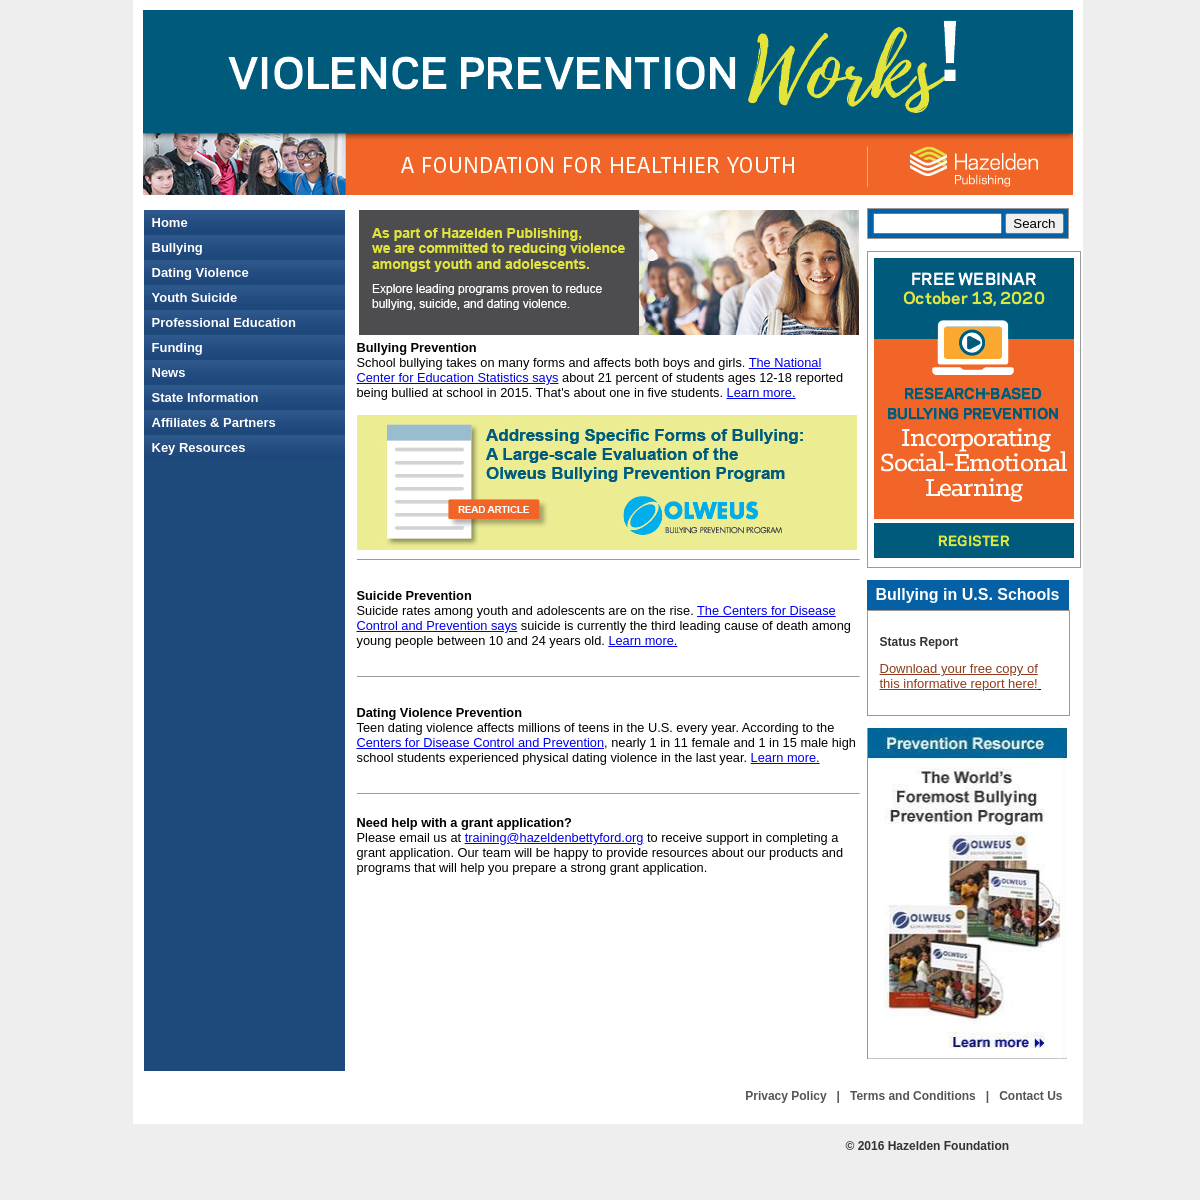 A complete backup of violencepreventionworks.org